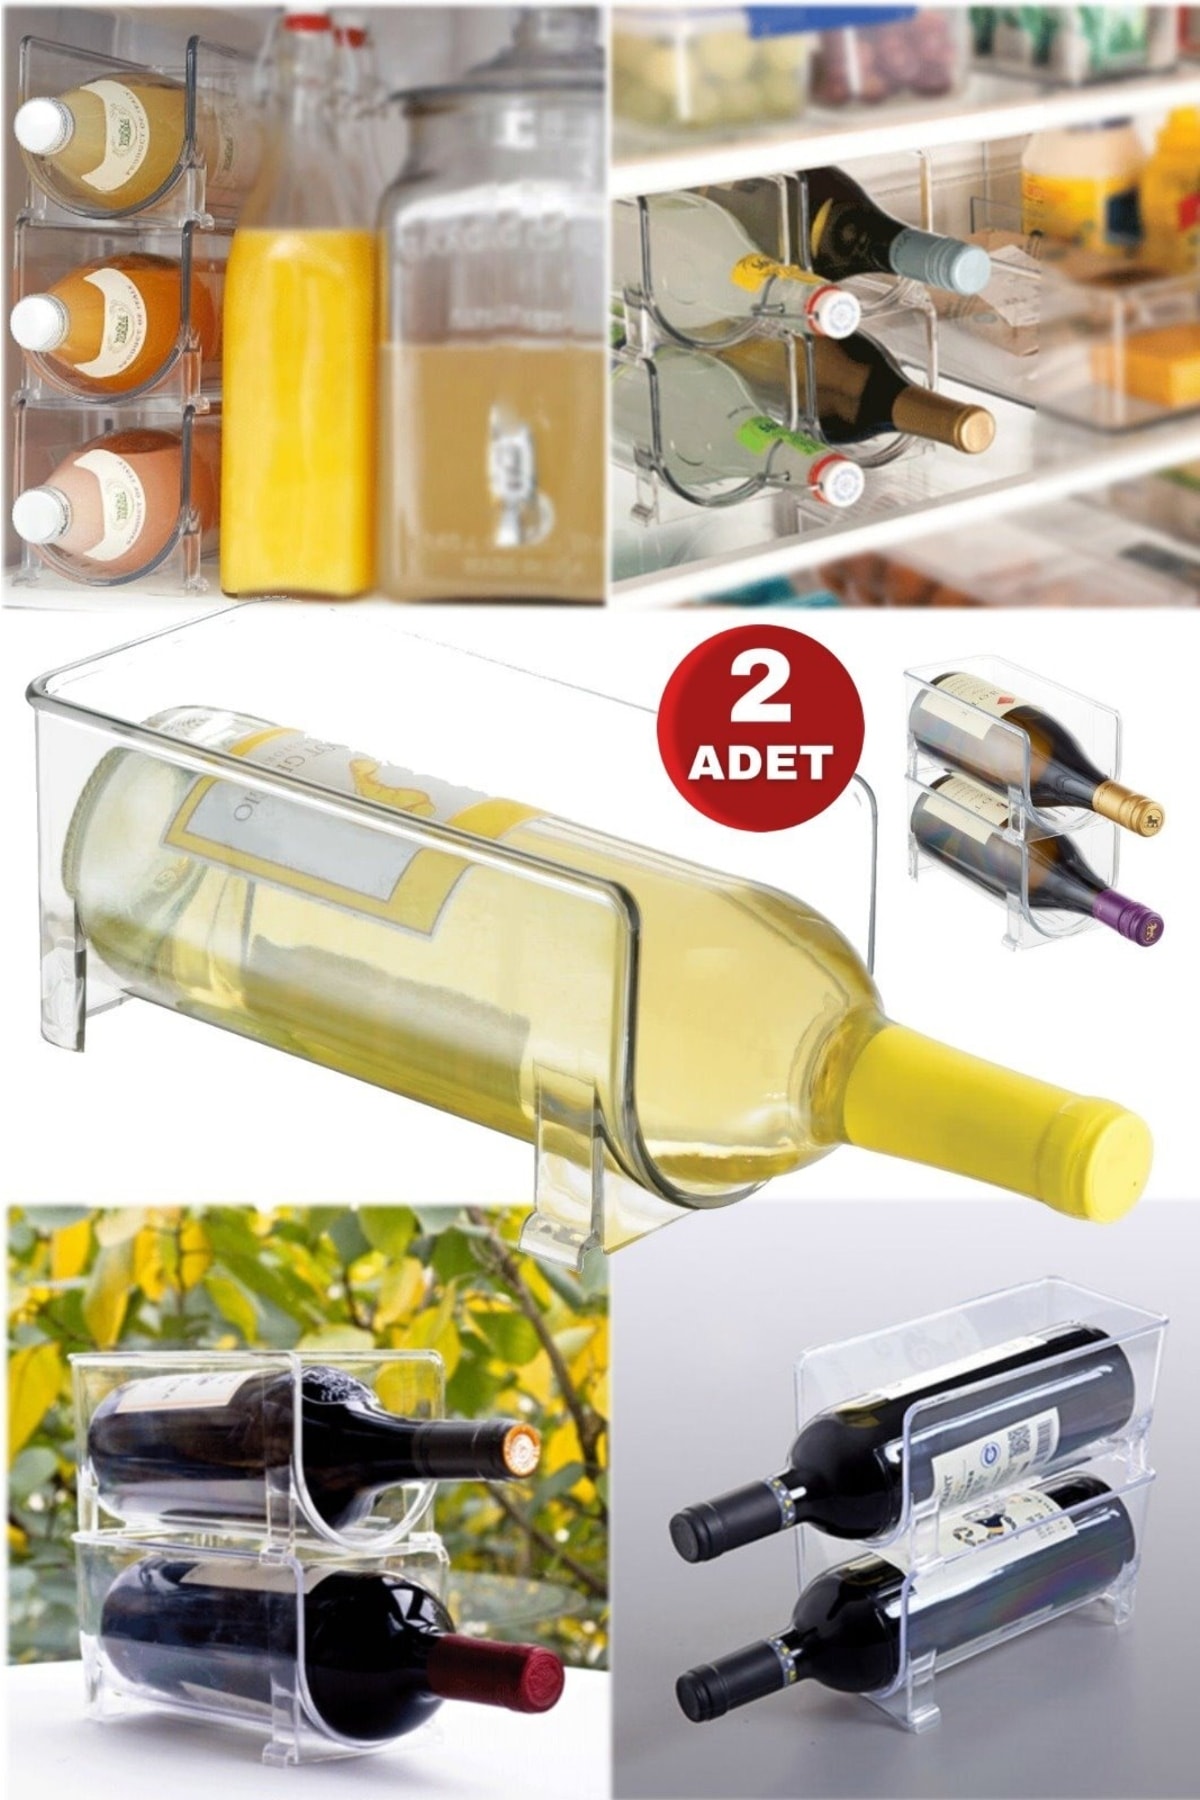 Utelips 2 Adet Buzdolabı Şarap Tutucu Şeffaf Istiflenebilir Plastik Şarap Rafı Depolama Şişesi Organizatör